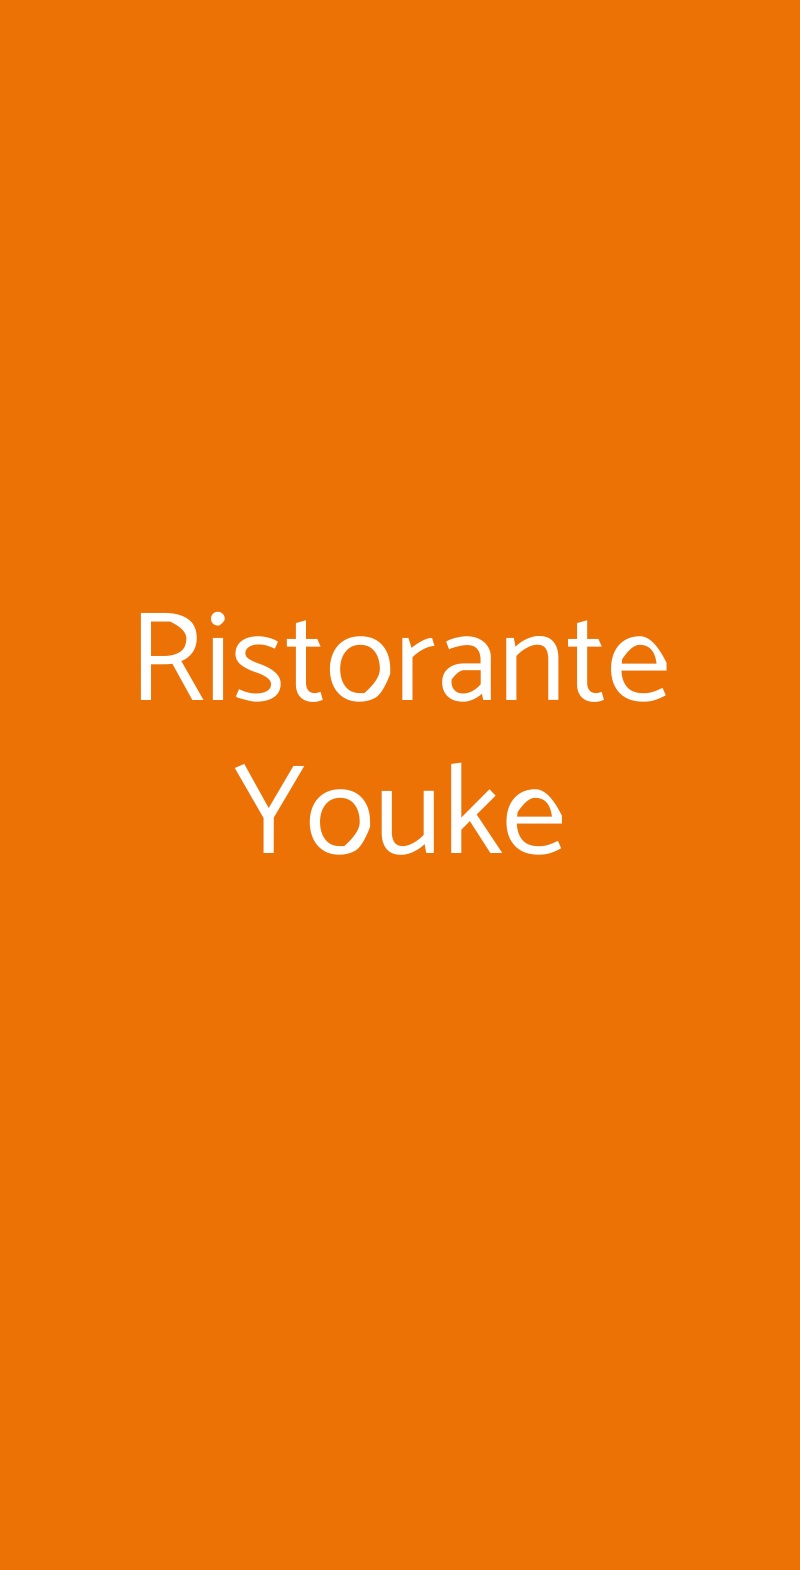 Ristorante Youke Milano menù 1 pagina